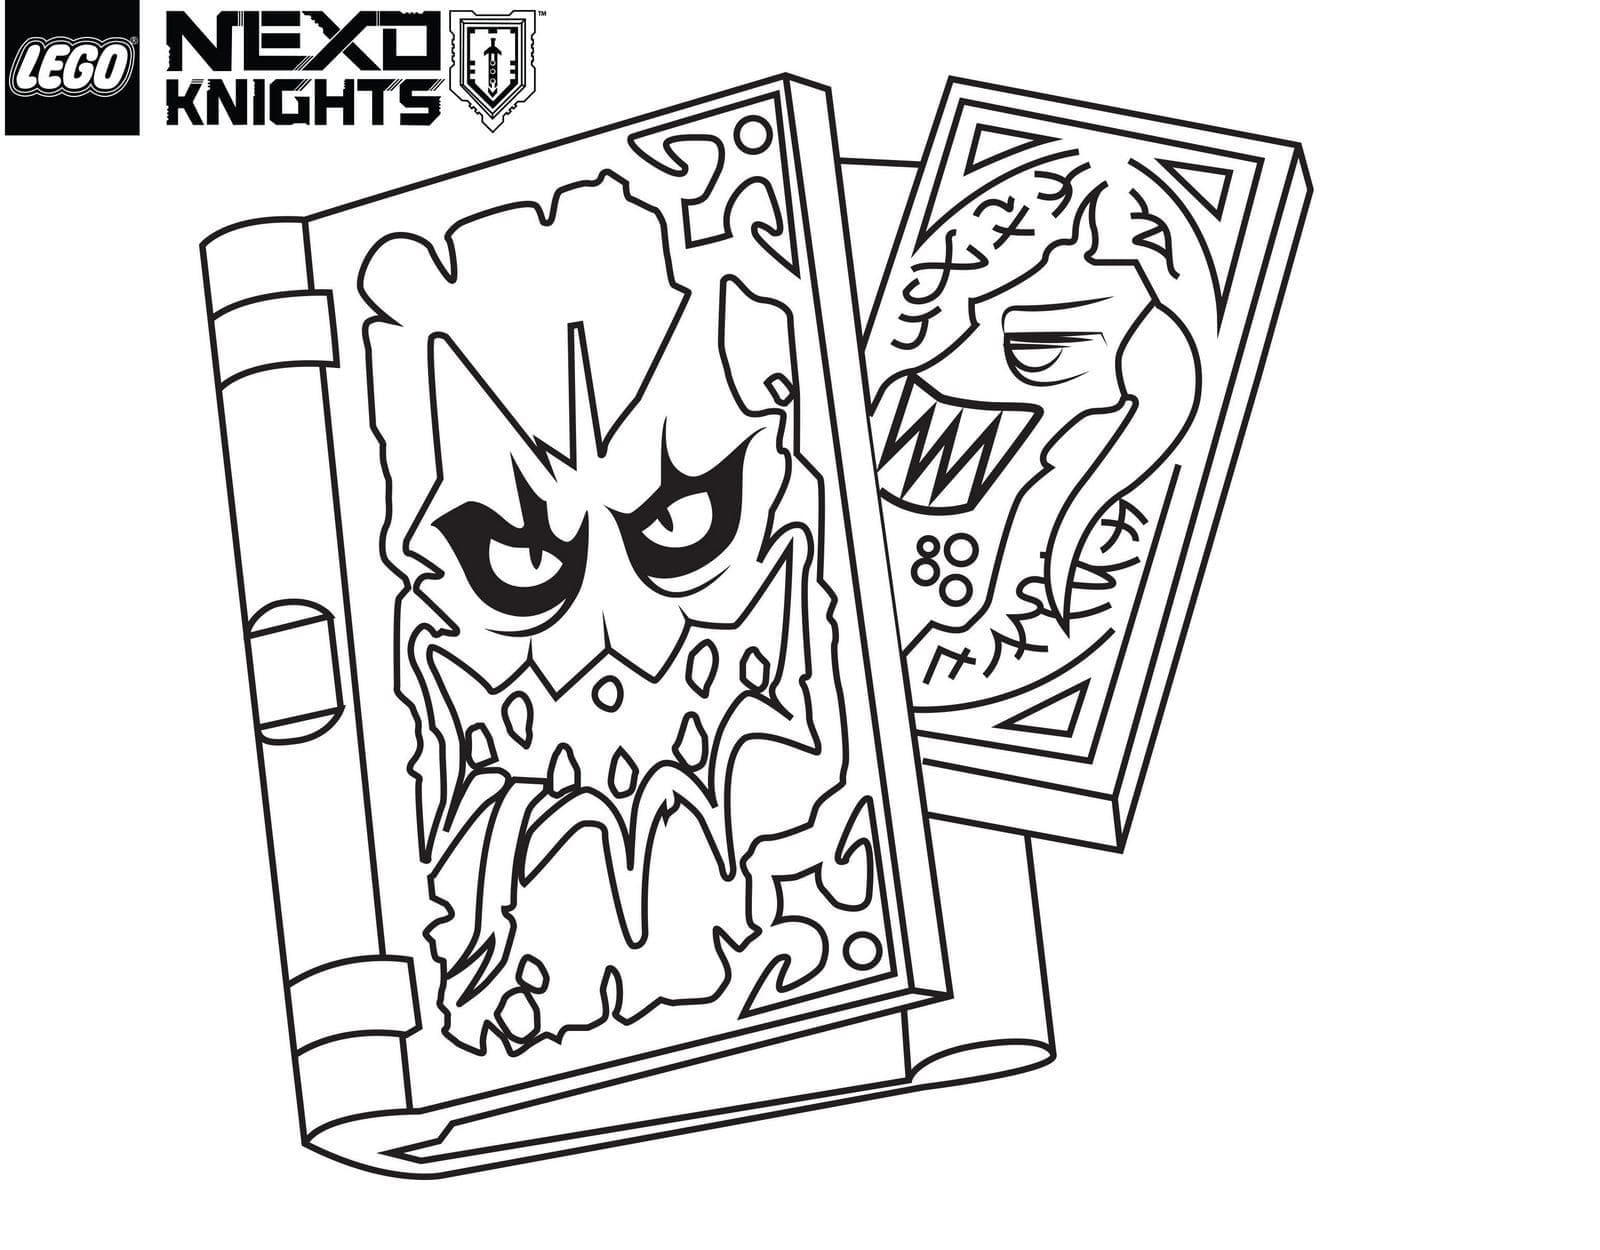 Nexo Knights Pour les Enfants coloring page